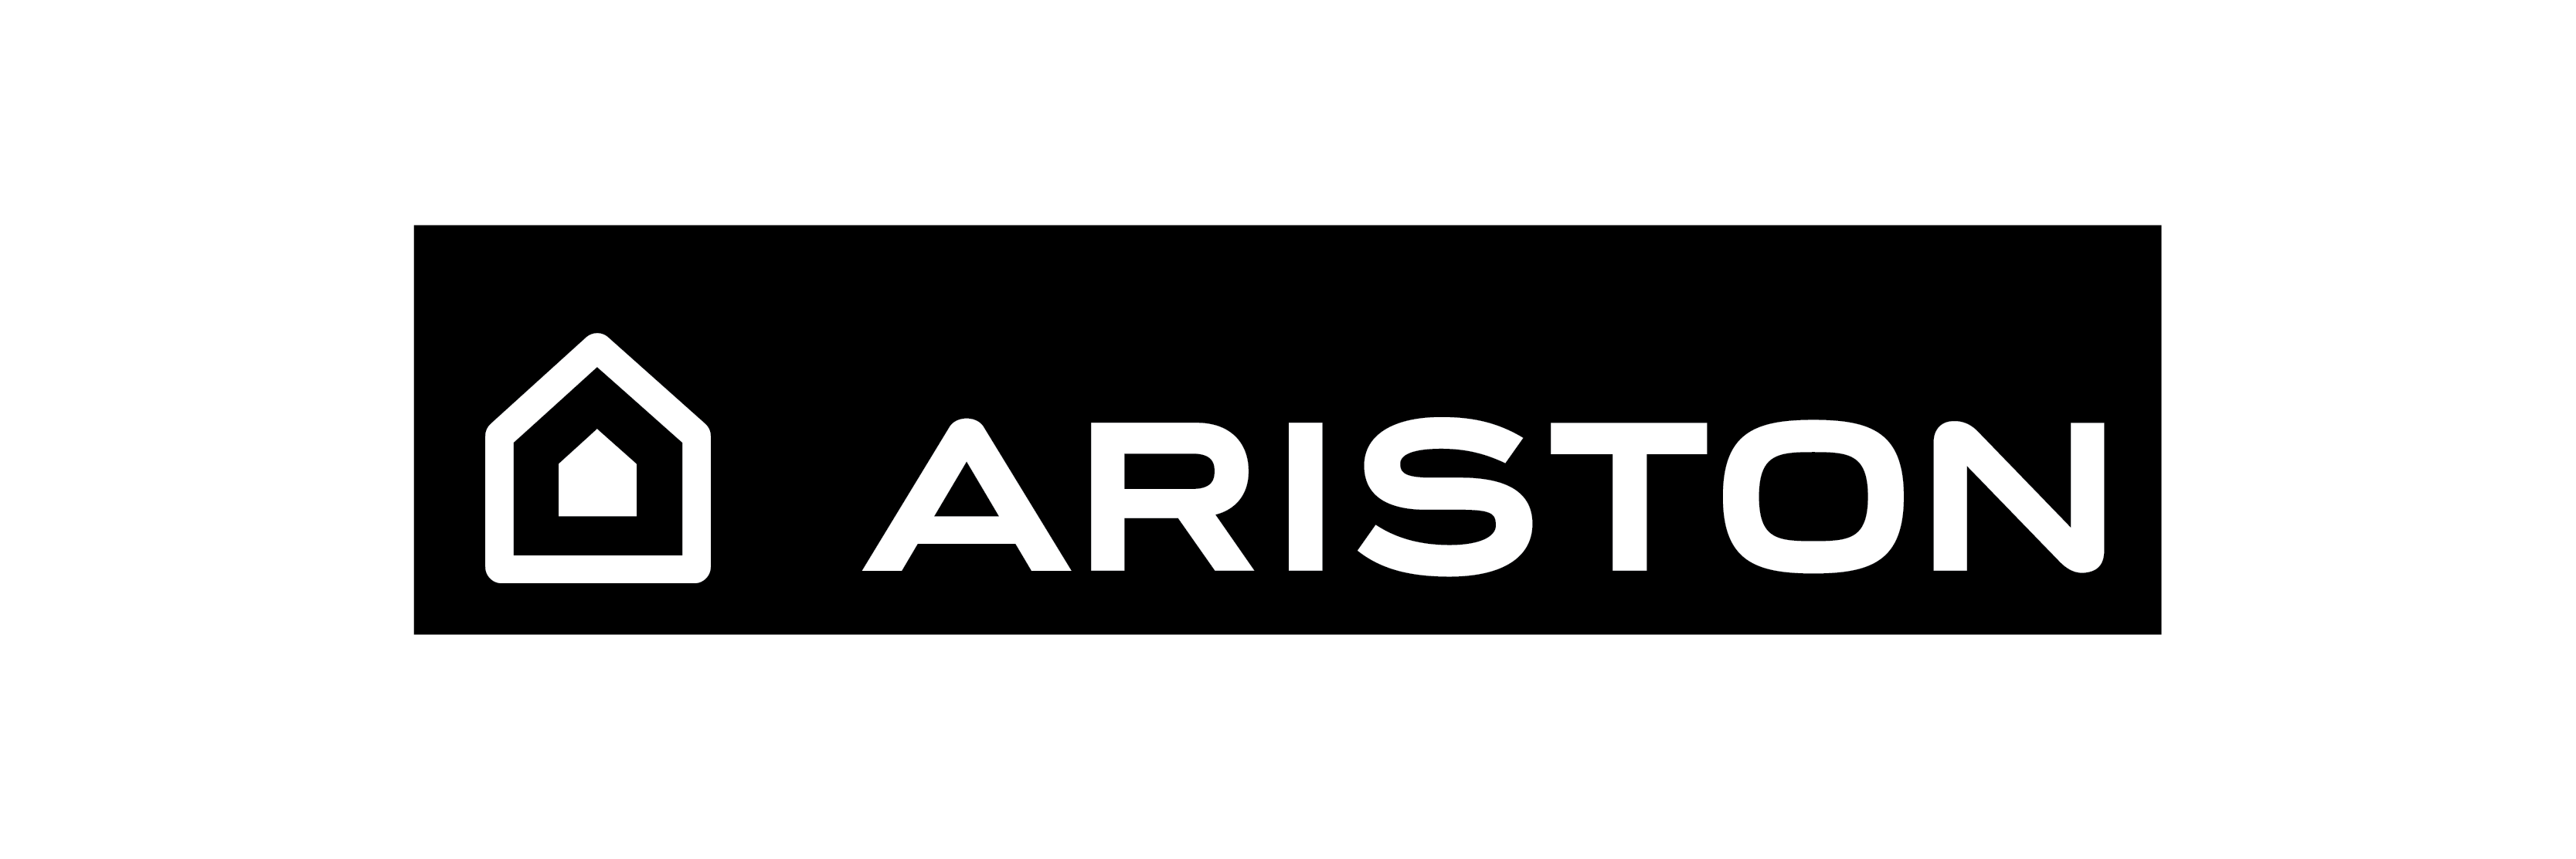 Кондиционеры ariston. Хотпоинт логотип. Ariston логотип. Хотпоинт Аристон логотип. Хотпоинт Аристон реклама.